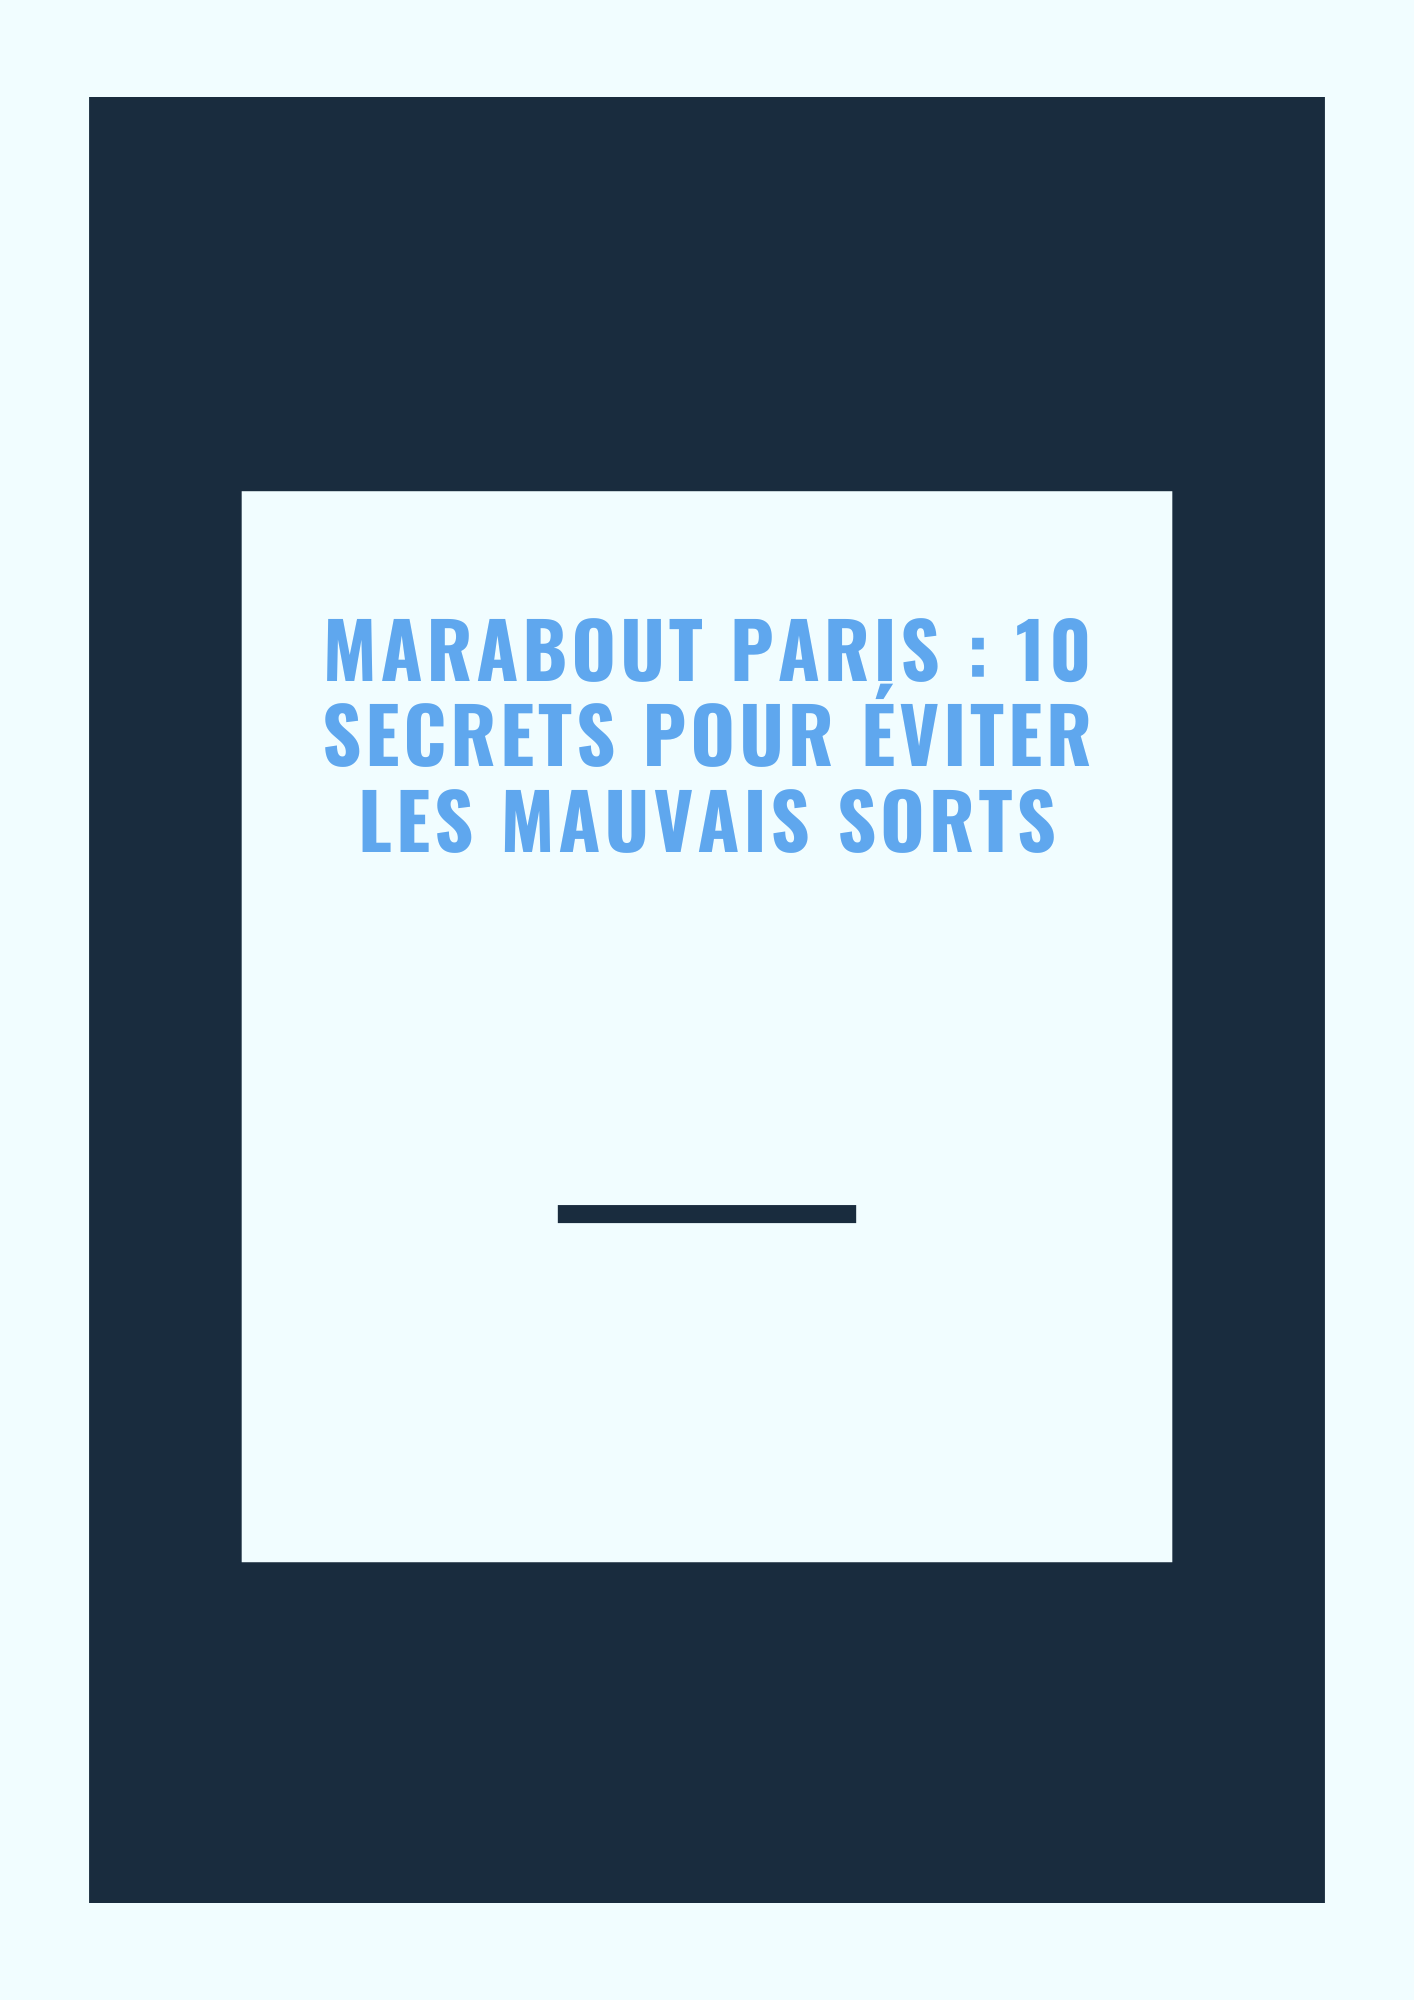 Marabout Paris  10 secrets pour éviter les mauvais sorts